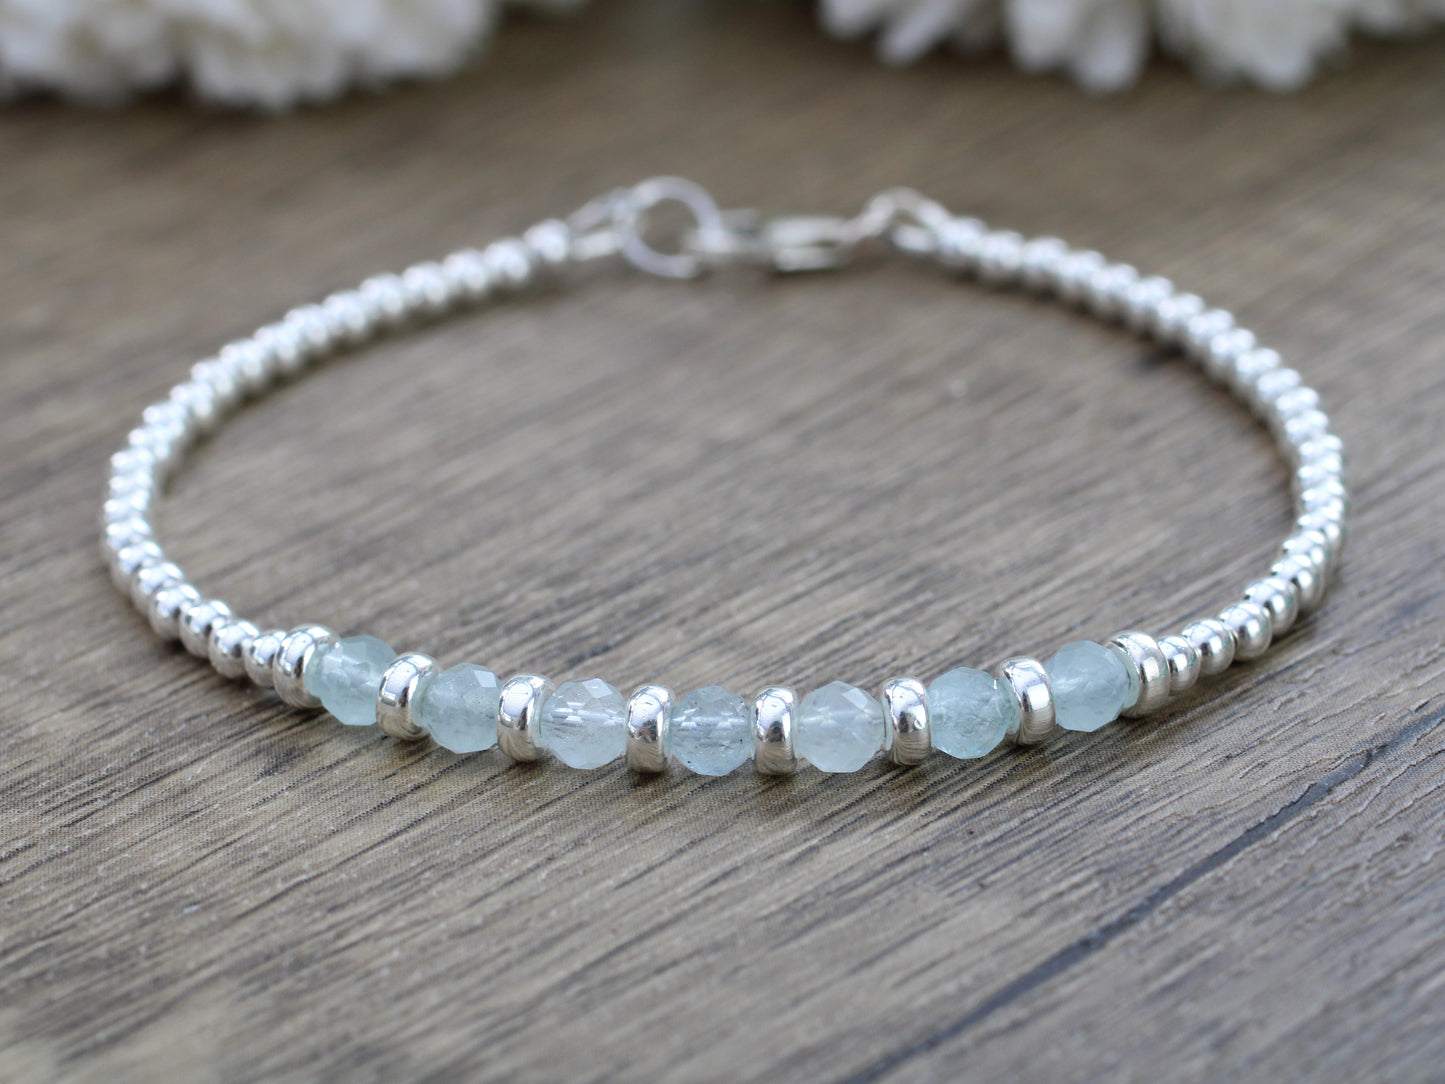 Aquamarine bracelet in silver.